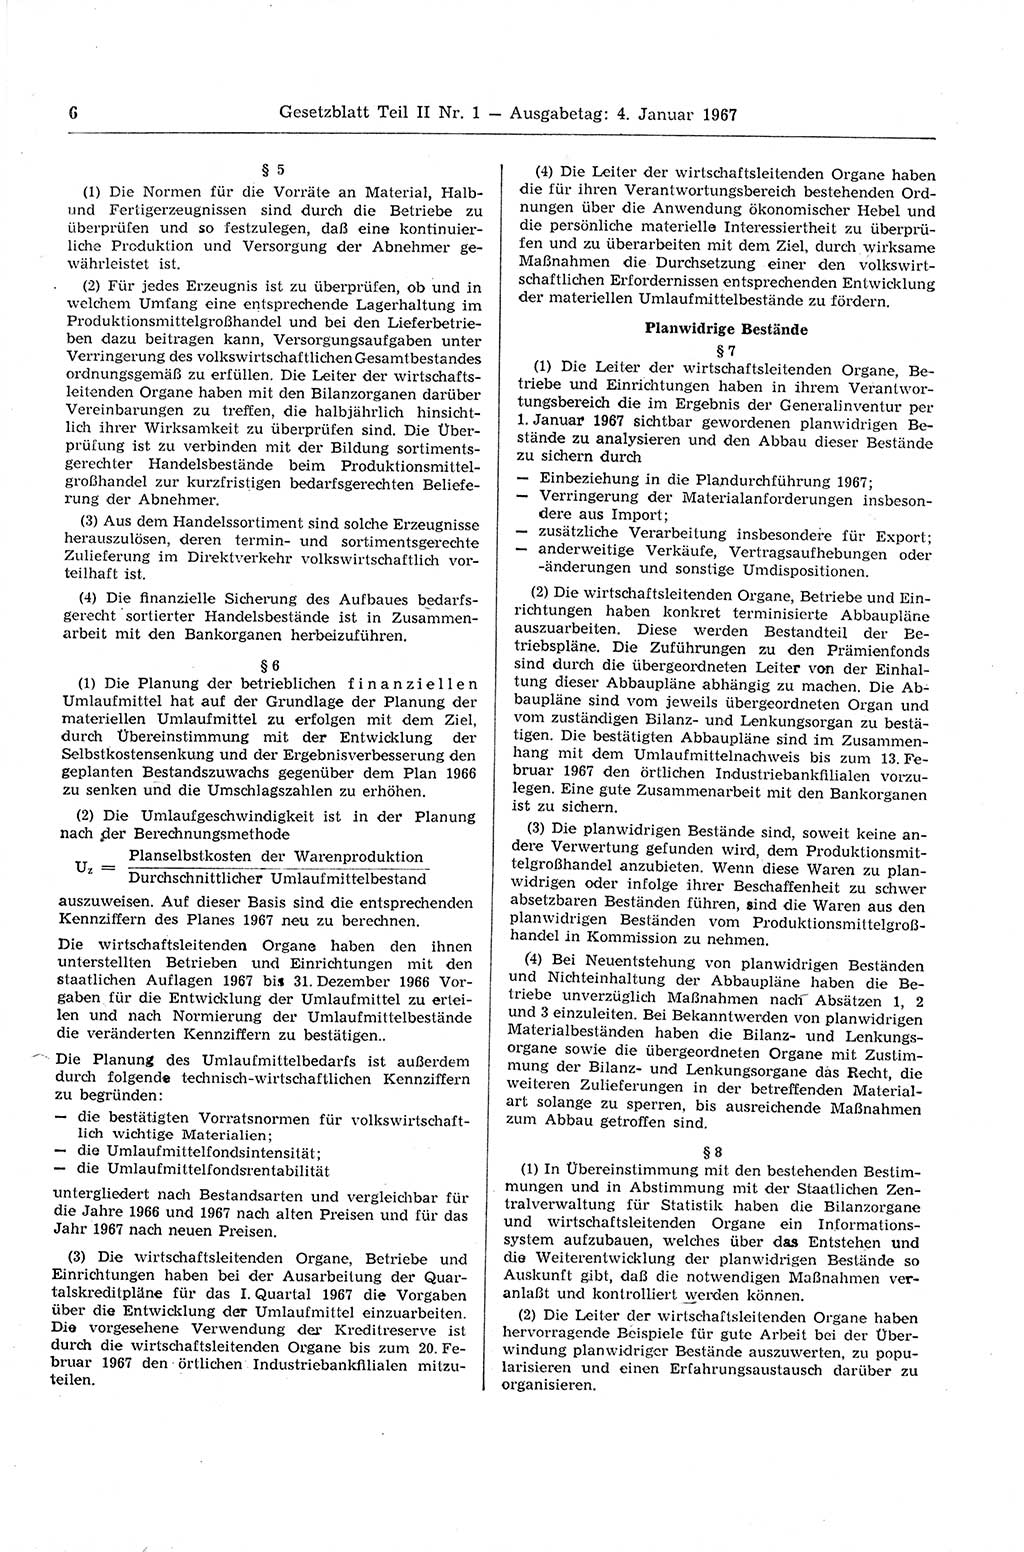 Gesetzblatt (GBl.) der Deutschen Demokratischen Republik (DDR) Teil ⅠⅠ 1967, Seite 6 (GBl. DDR ⅠⅠ 1967, S. 6)